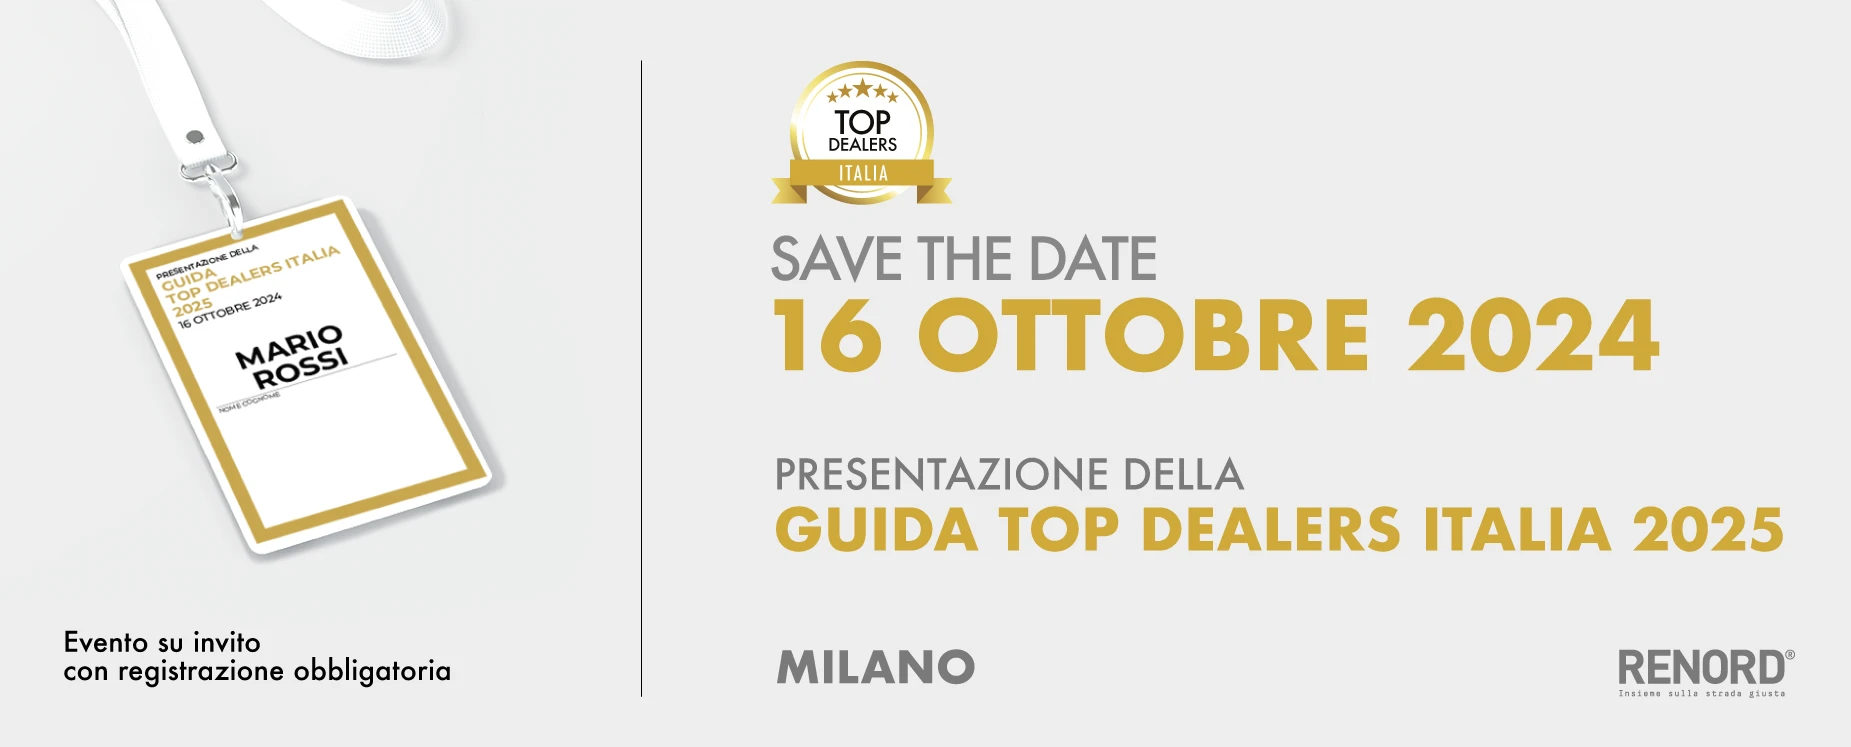 Presentazione Guida Top Dealers Italia 2025